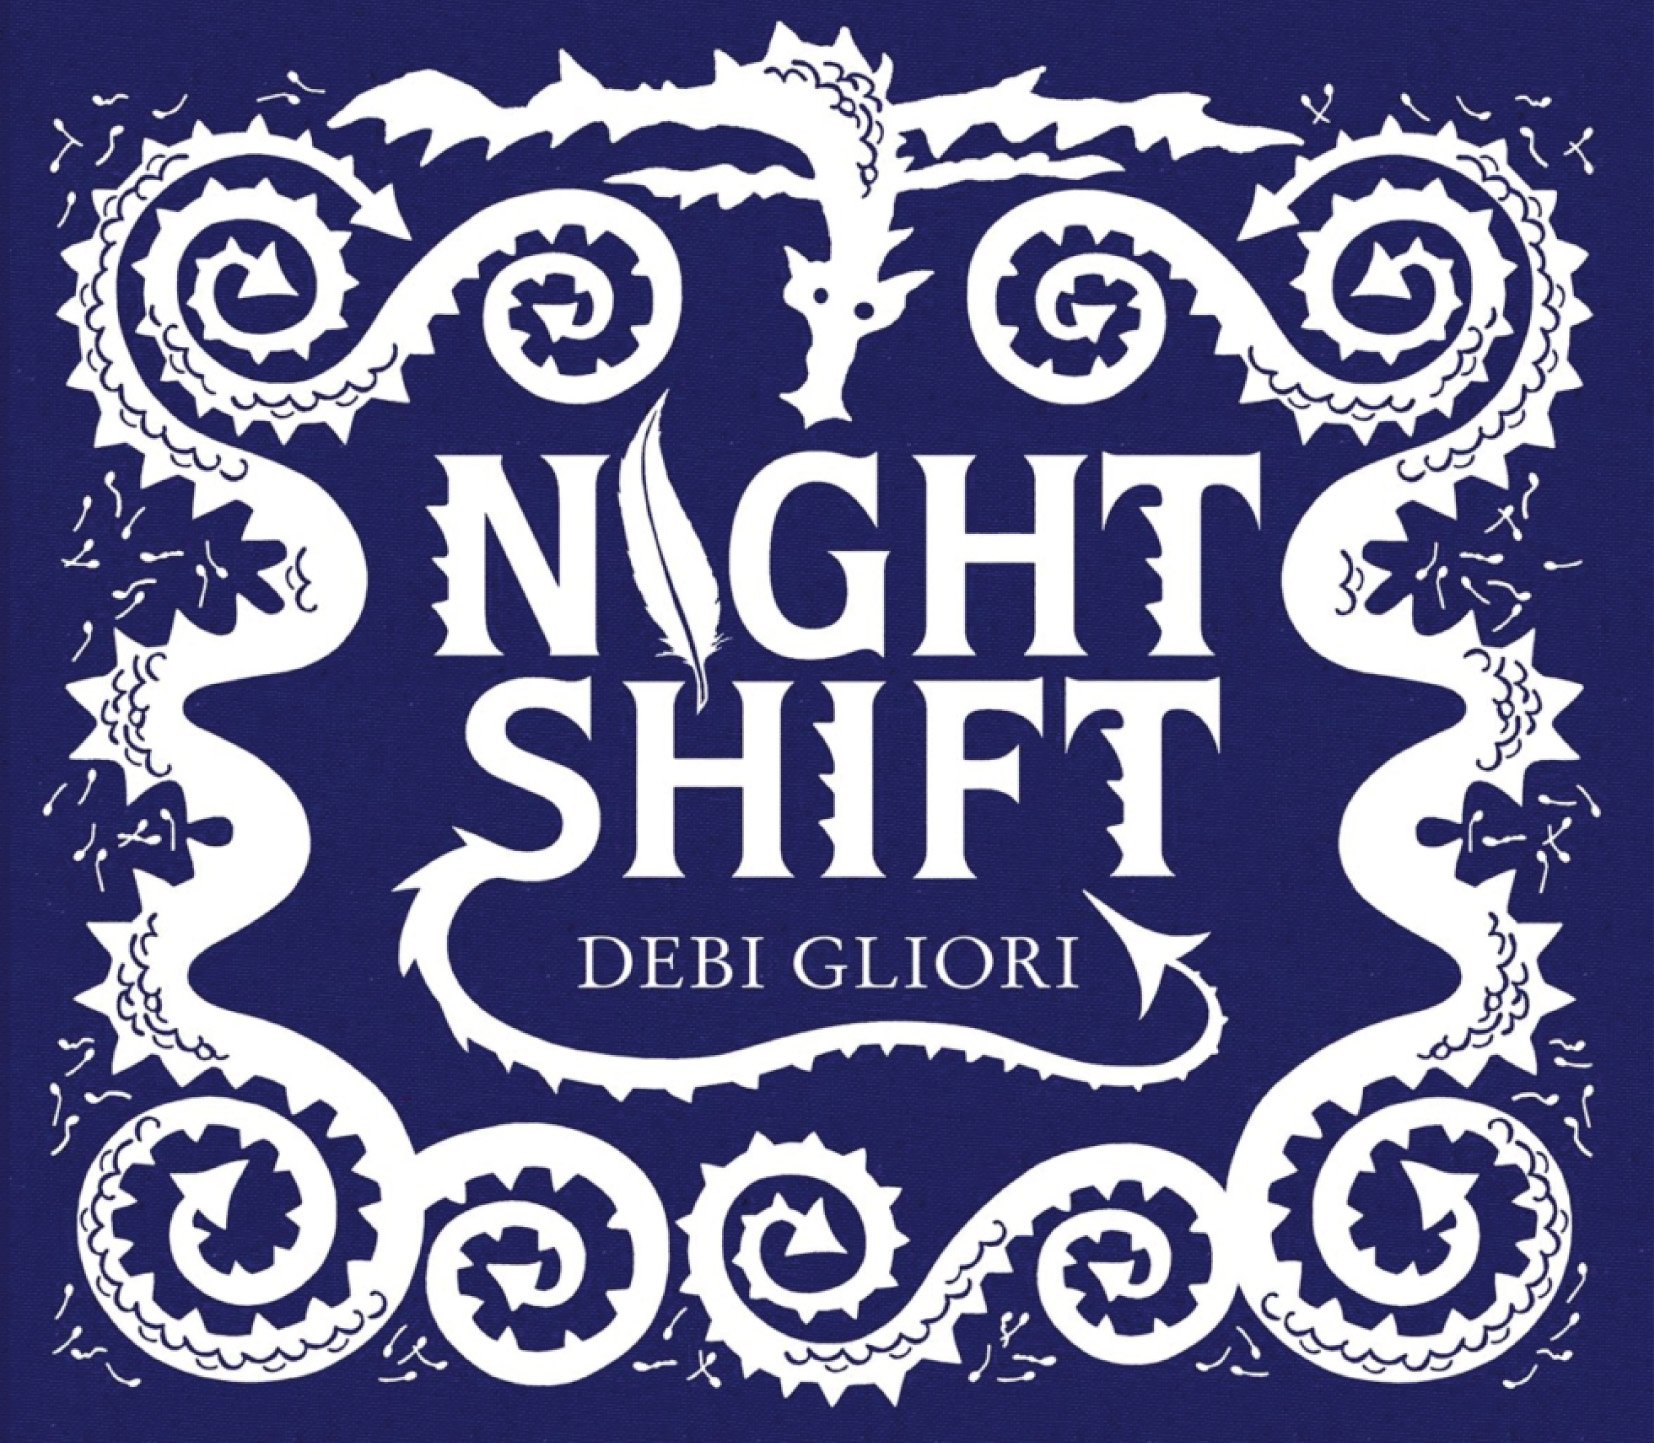 debbie-gliori-night-shift-cover.jpg